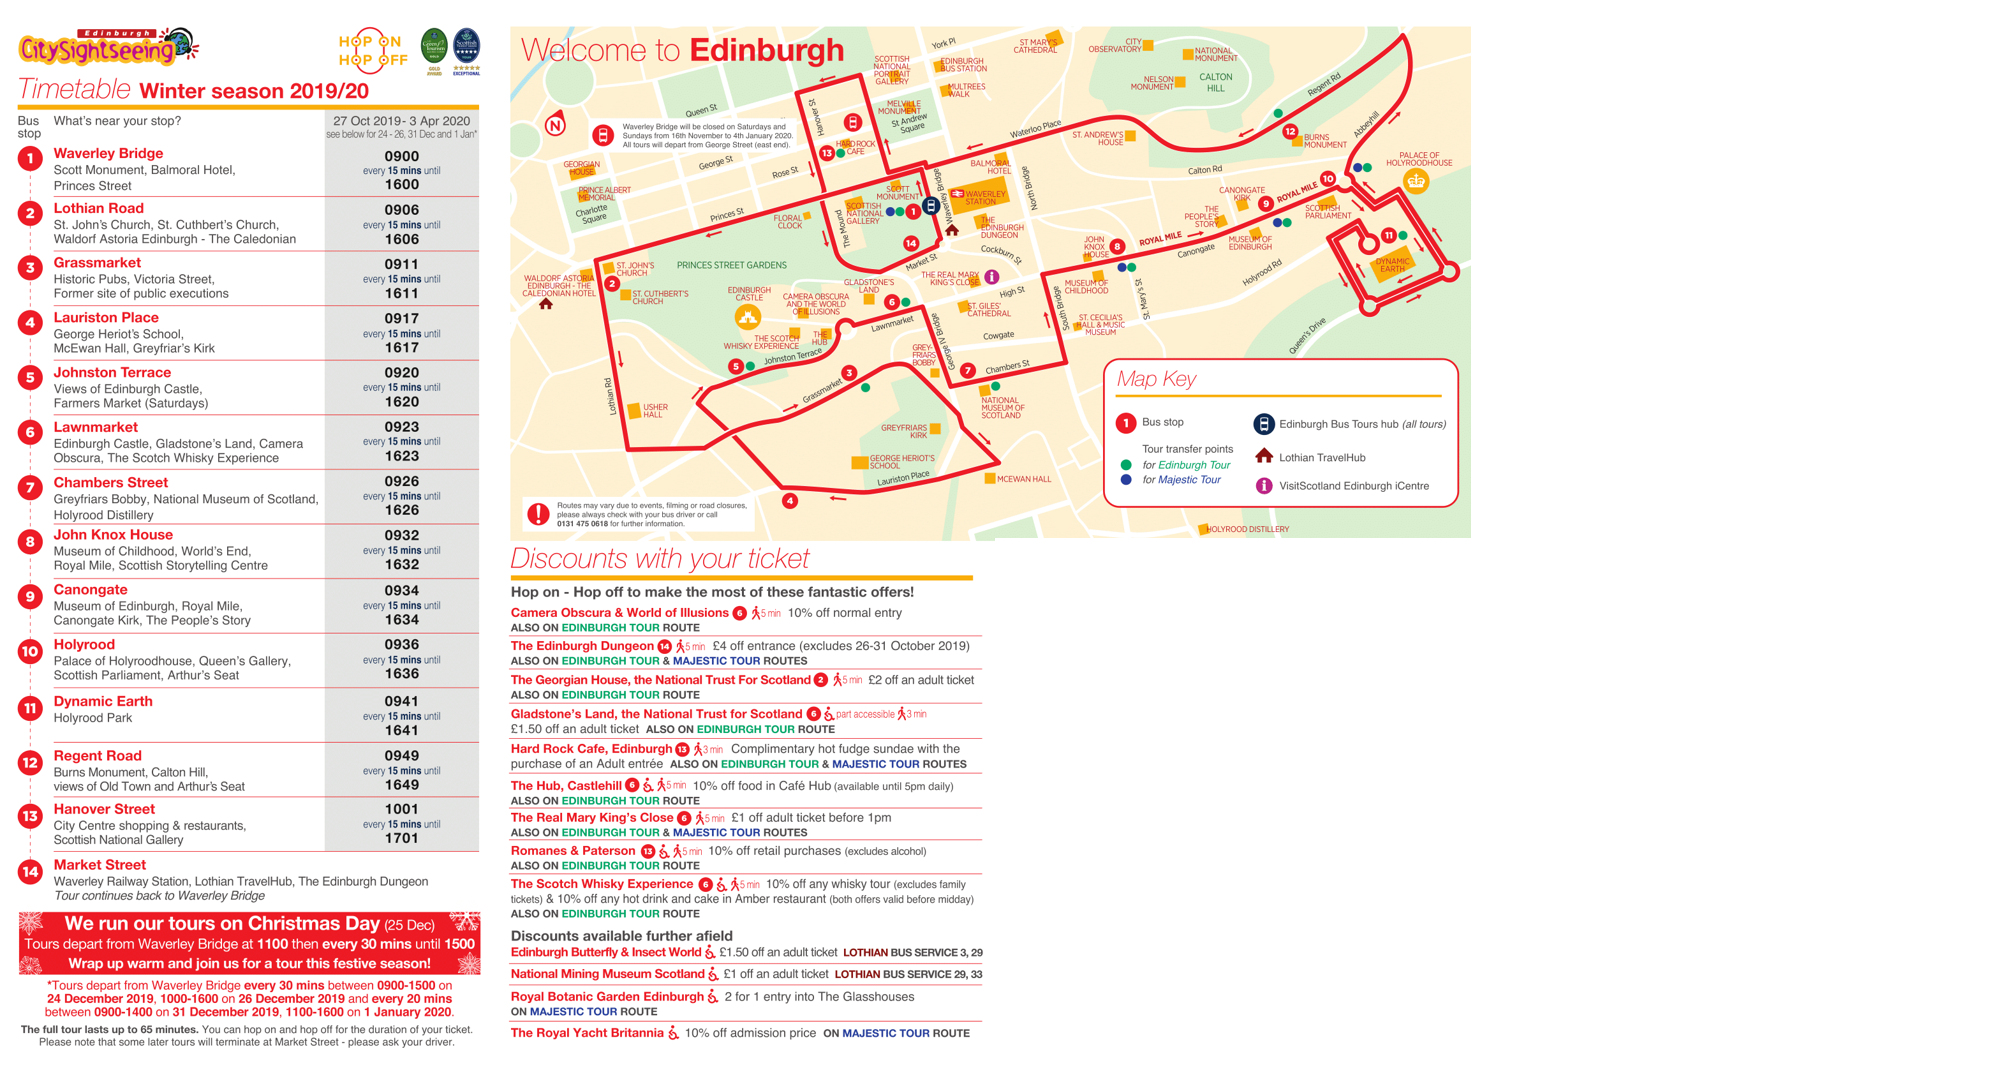 edinburgh bus tour 2 for 1 timetable